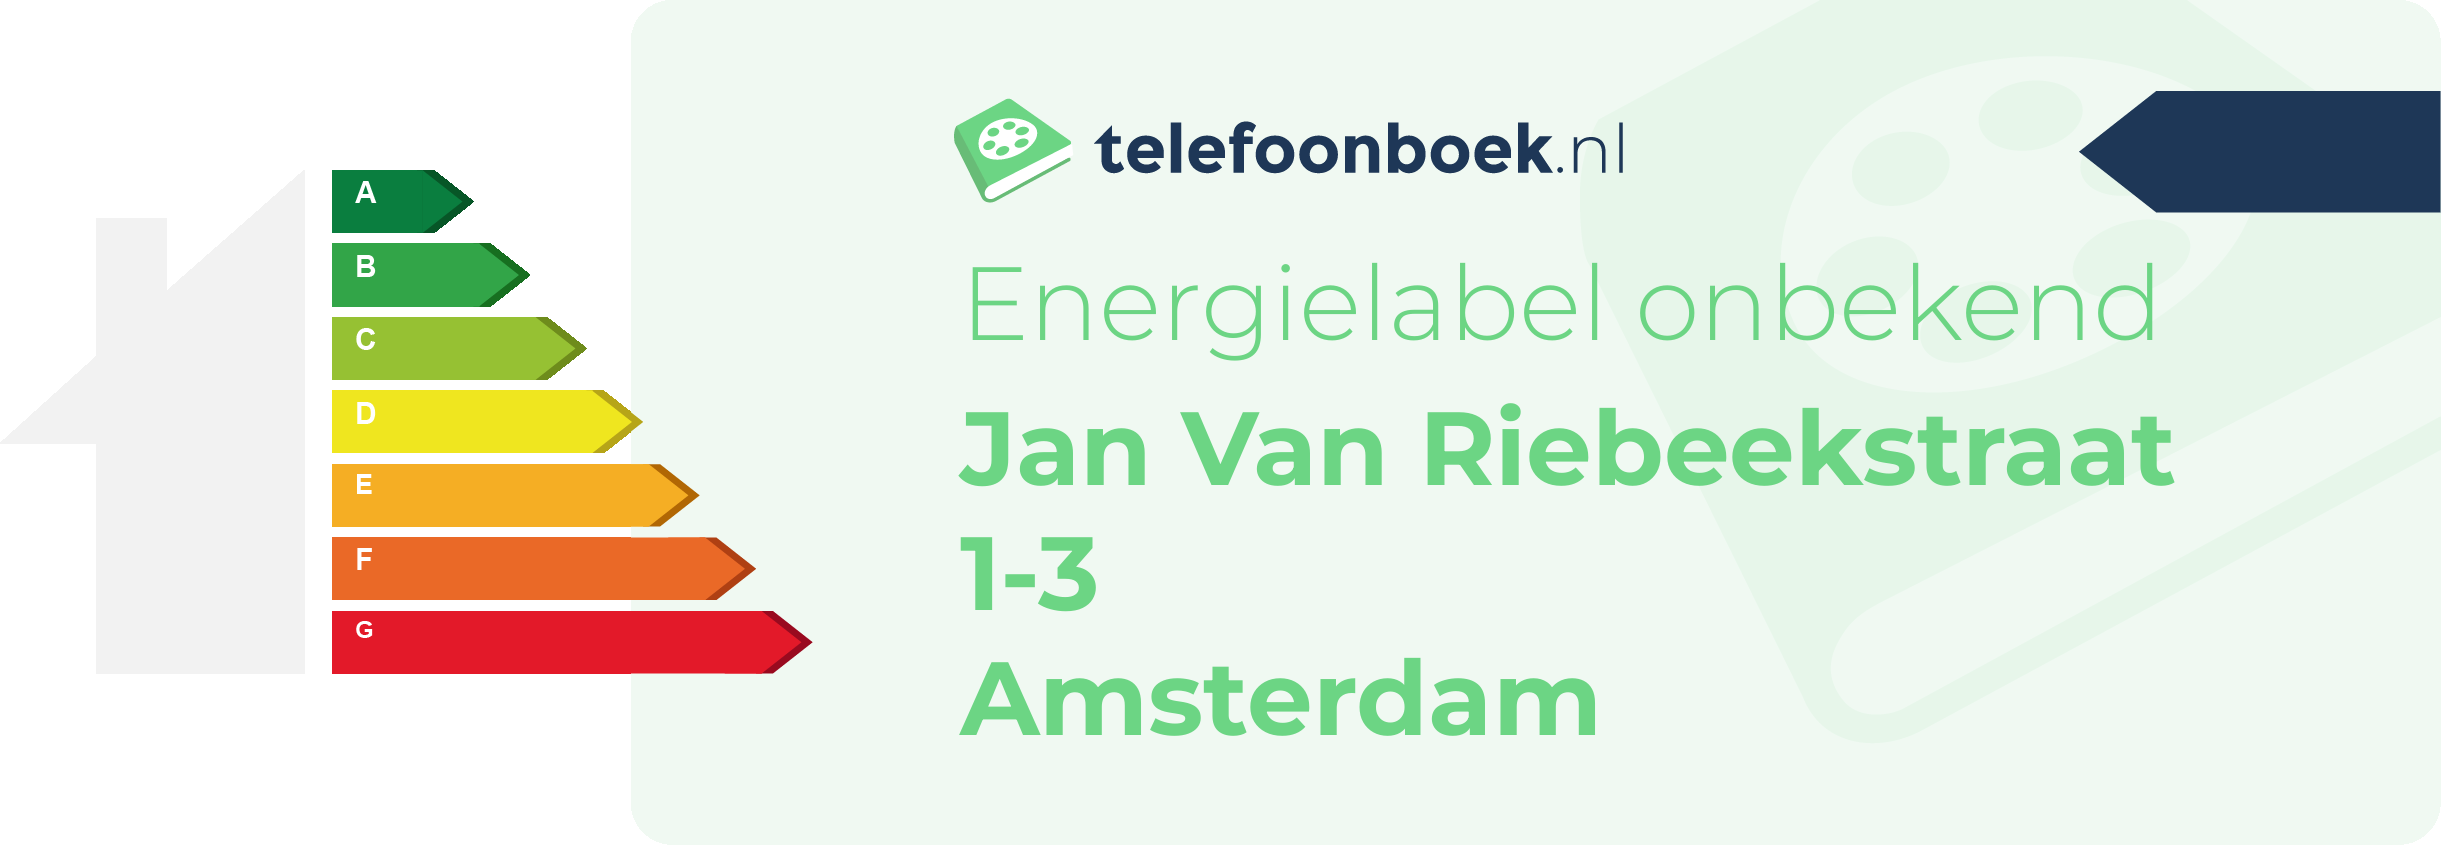 Energielabel Jan Van Riebeekstraat 1-3 Amsterdam